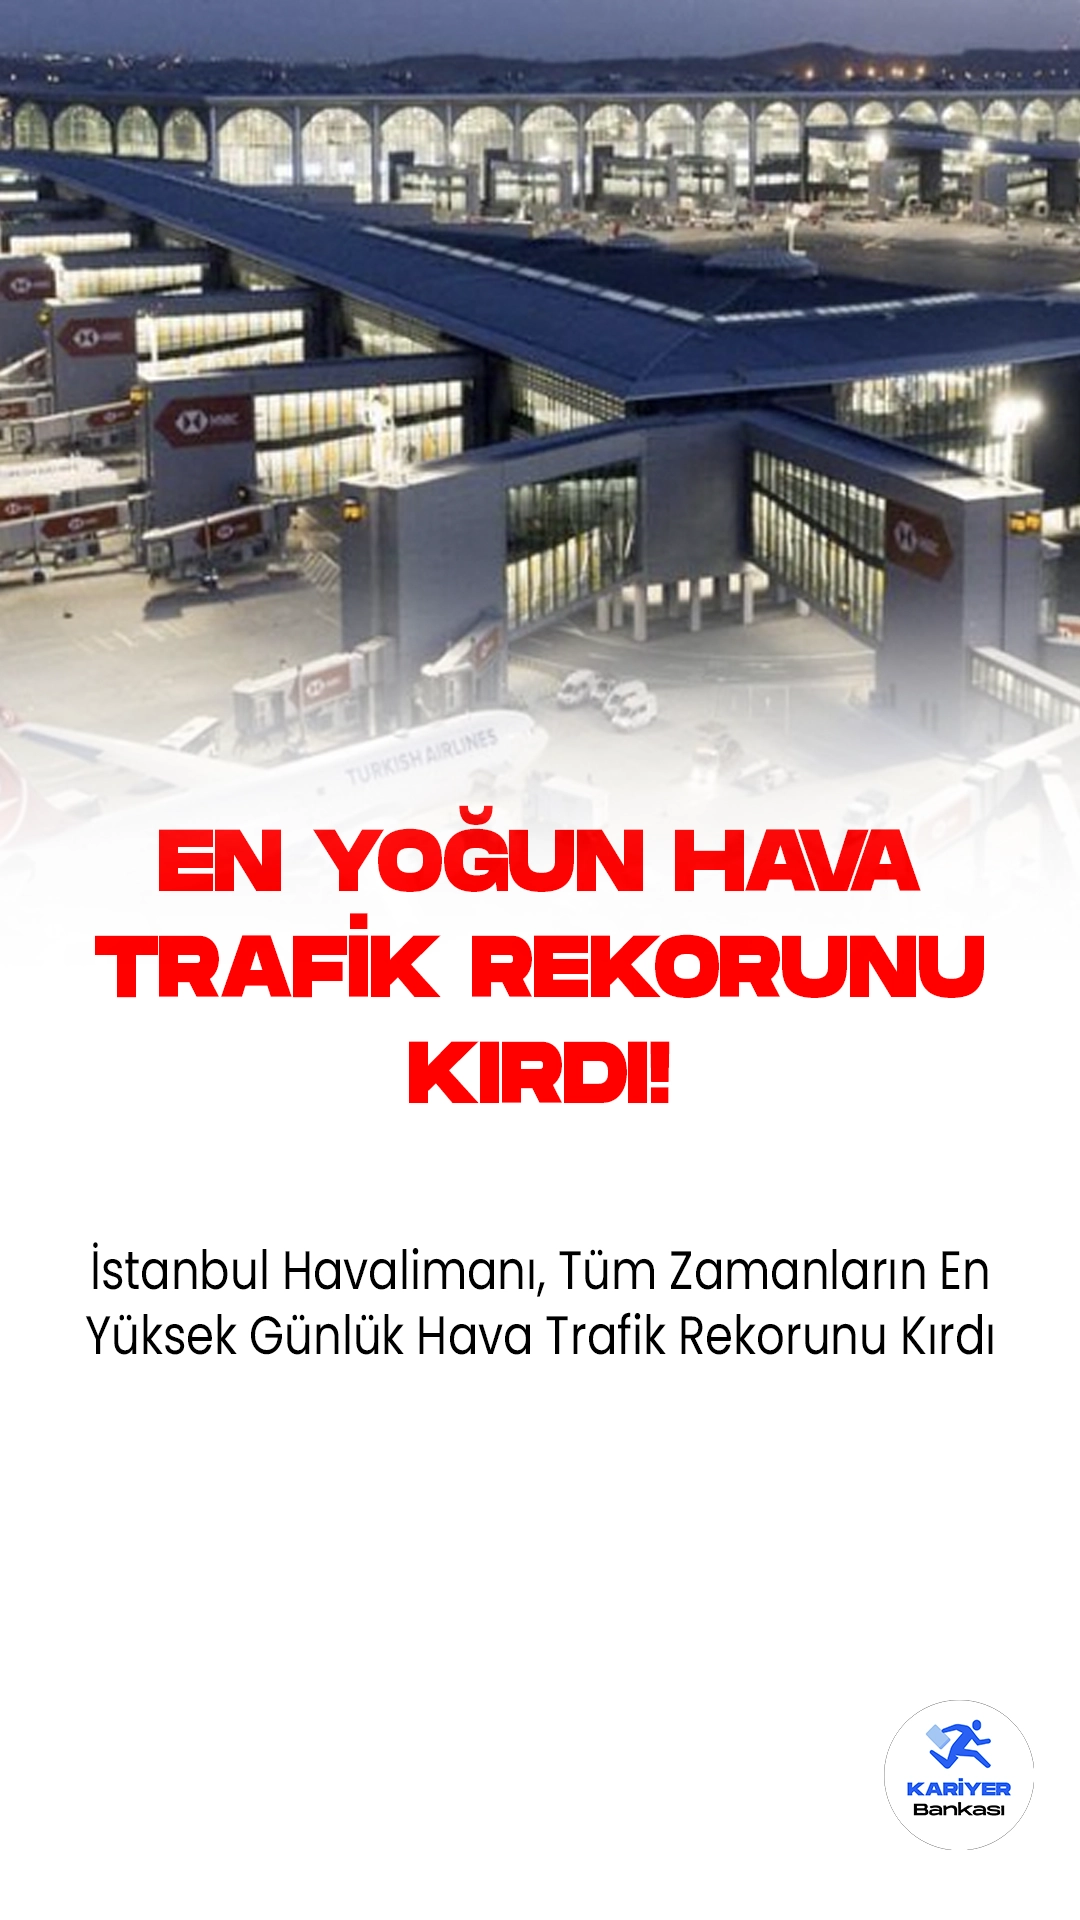 İstanbul Havalimanı, Tüm Zamanların En Yüksek Günlük Hava Trafik Rekorunu Kırdı.İstanbul Havalimanı, dün gerçekleşen 1684 uçuşla Avrupa havalimanları arasında tüm zamanların en yüksek günlük hava trafiğine ulaştı. Havalimanının işletmecisi İGA'dan alınan bilgilere göre, İstanbul Havalimanı'nda dün toplam 1684 uçak inişi ve kalkışı gerçekleştirildi.